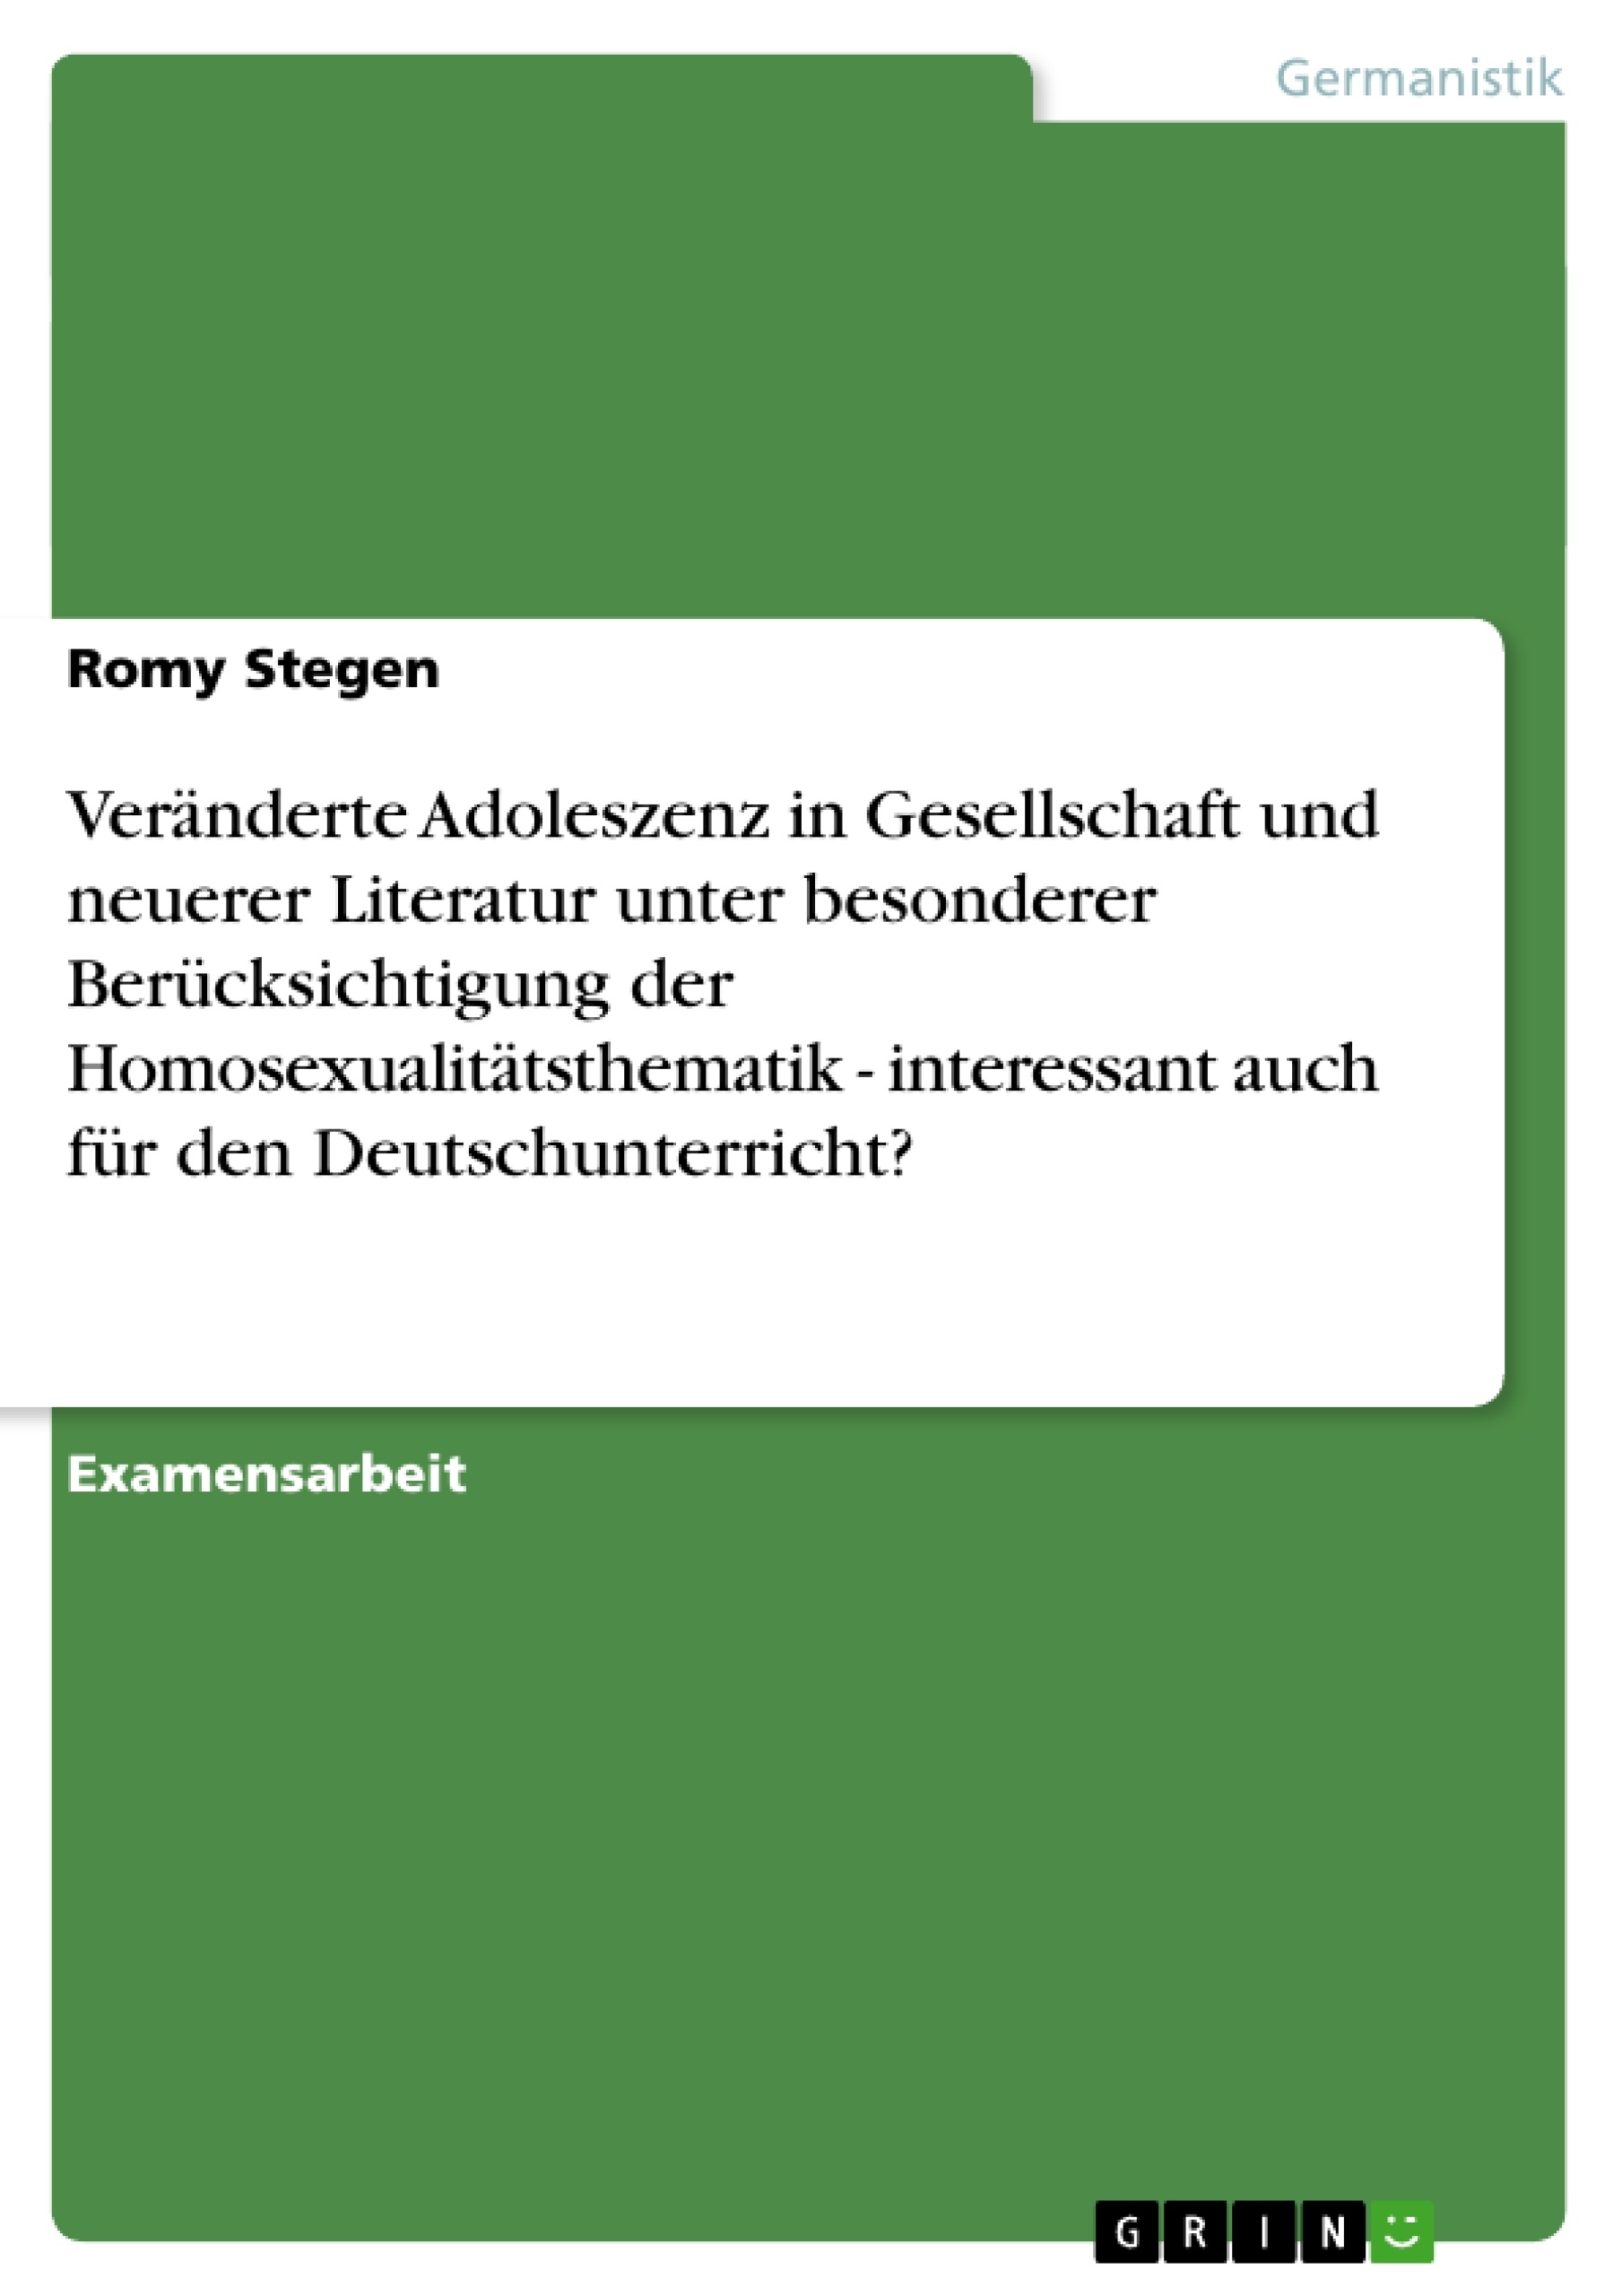 Título: Veränderte Adoleszenz in Gesellschaft und neuerer Literatur unter besonderer Berücksichtigung der Homosexualitätsthematik - interessant auch für den Deutschunterricht?